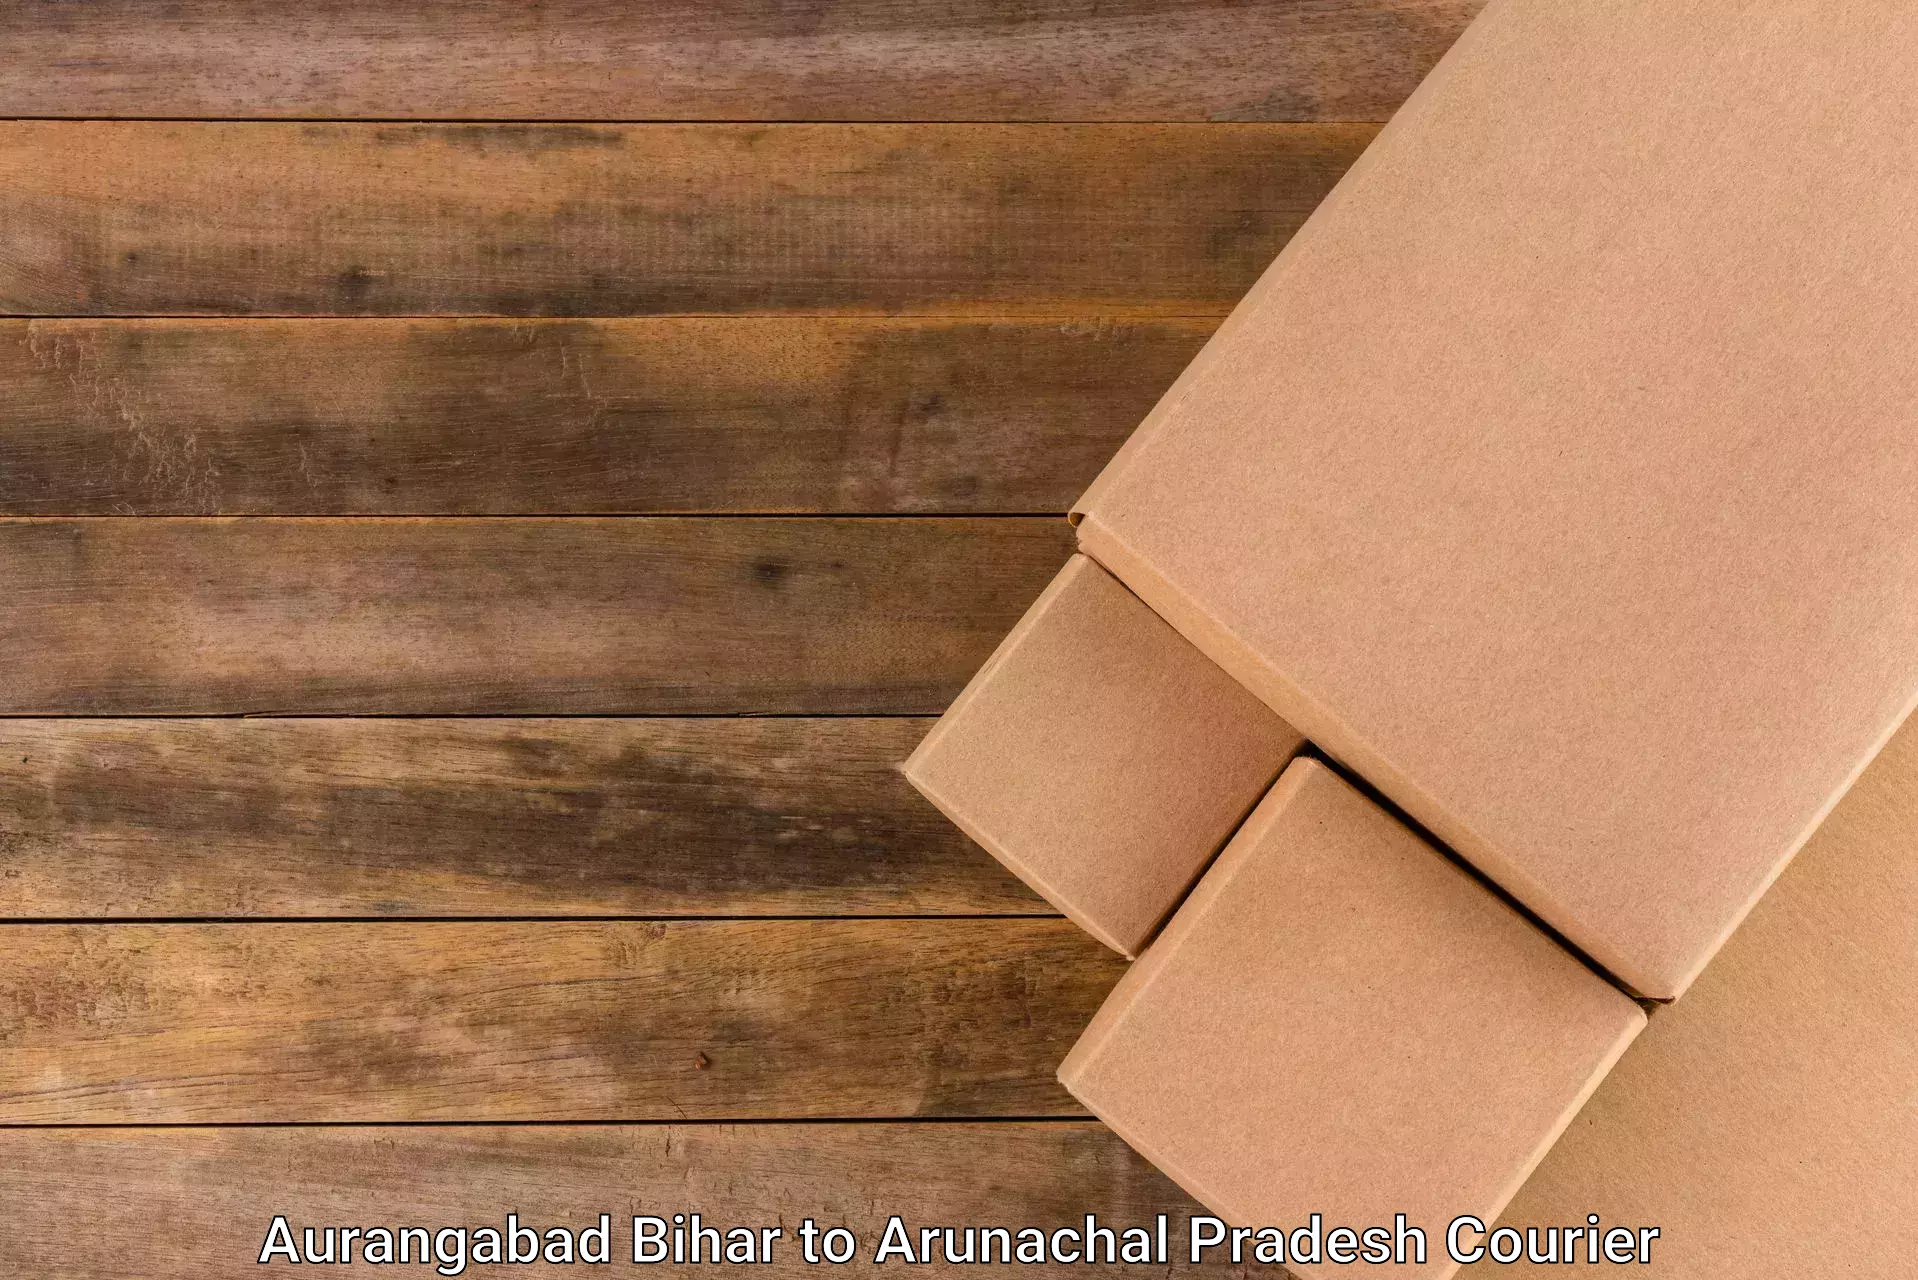 Cost-effective courier options Aurangabad Bihar to Rajiv Gandhi University Itanagar